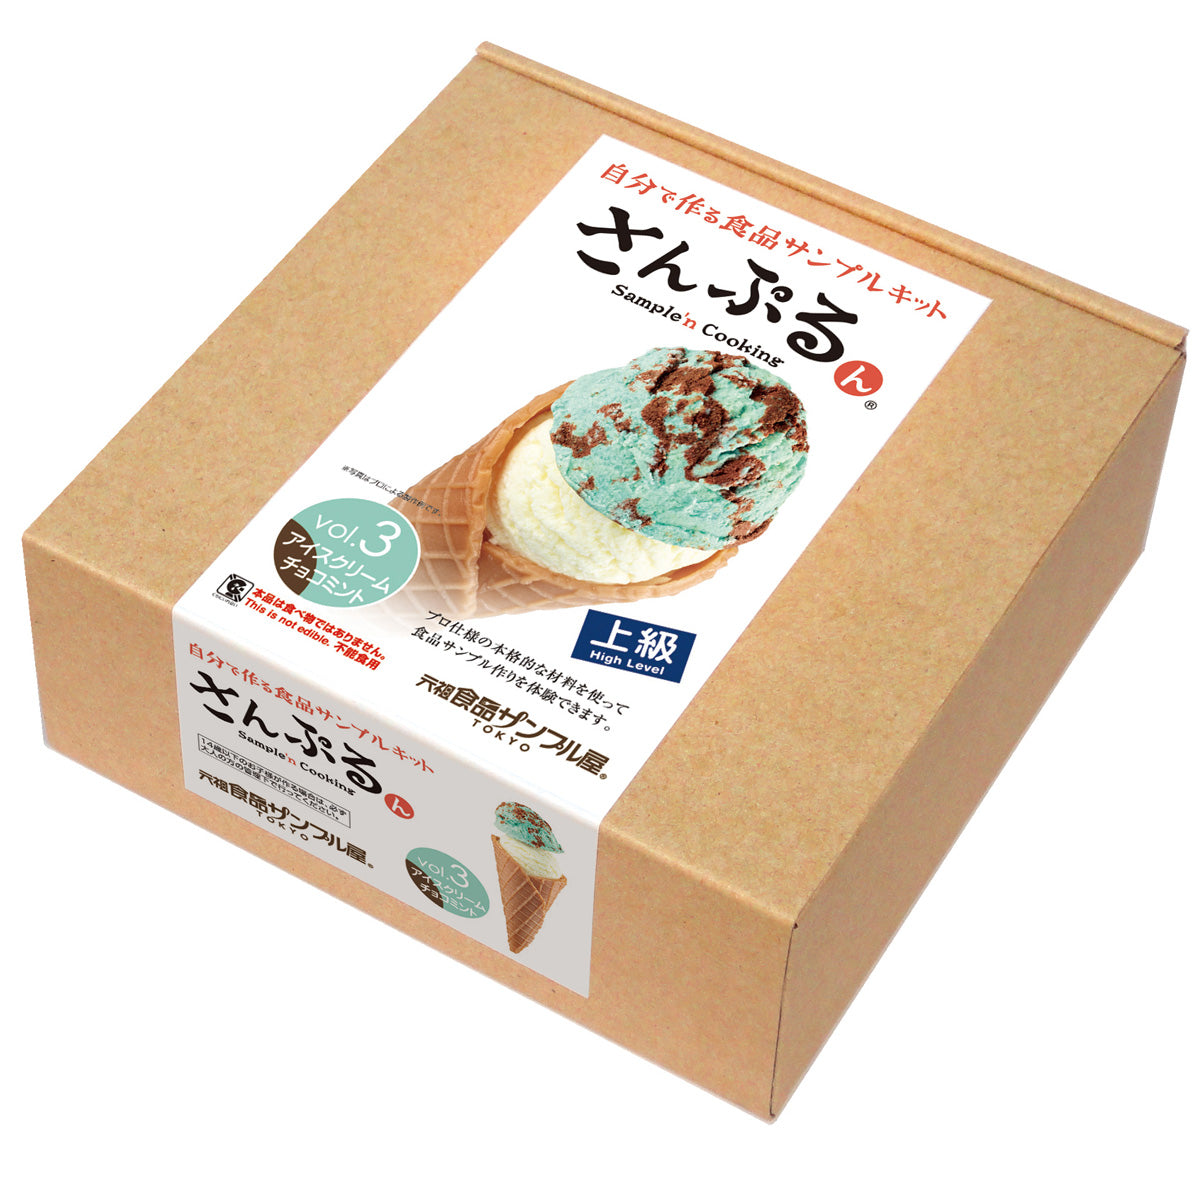 これは自分でつくる食品サンプルキット「さんぷるん アイスクリーム Vol.3チョコミント」の外箱の写真です。